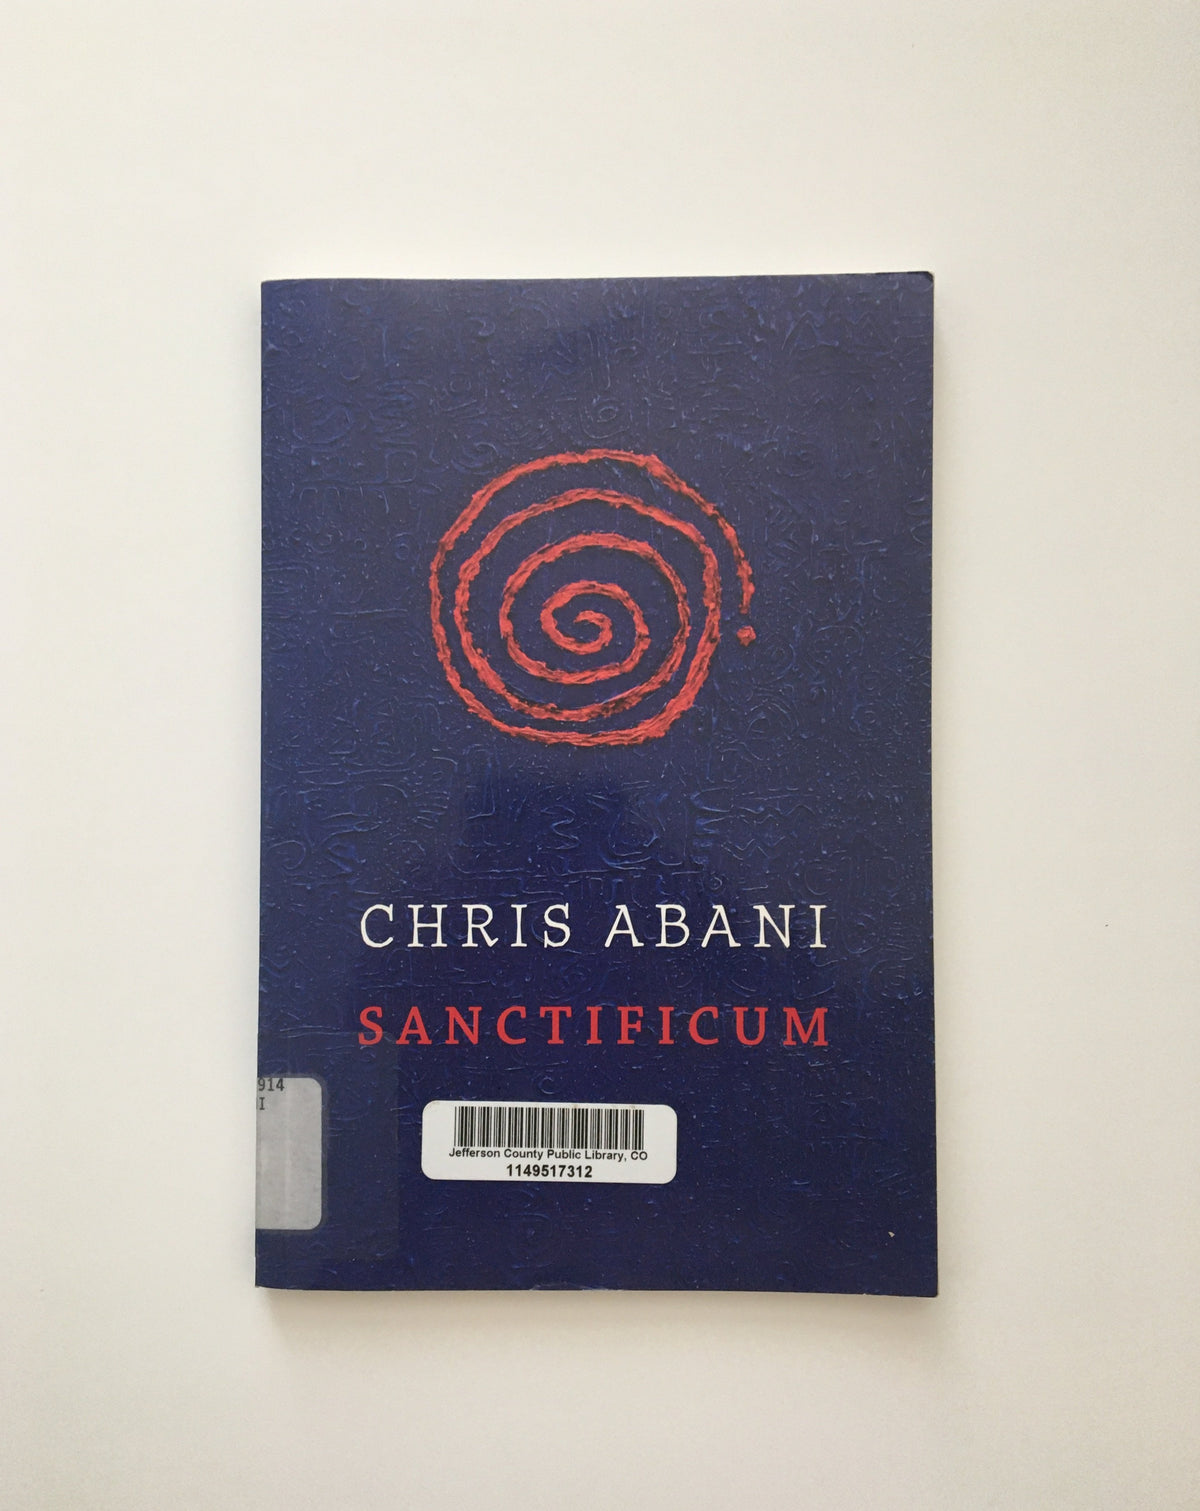 Sanctificum by Chris Abani, book, Ten Dollar Books, Ten Dollar Books